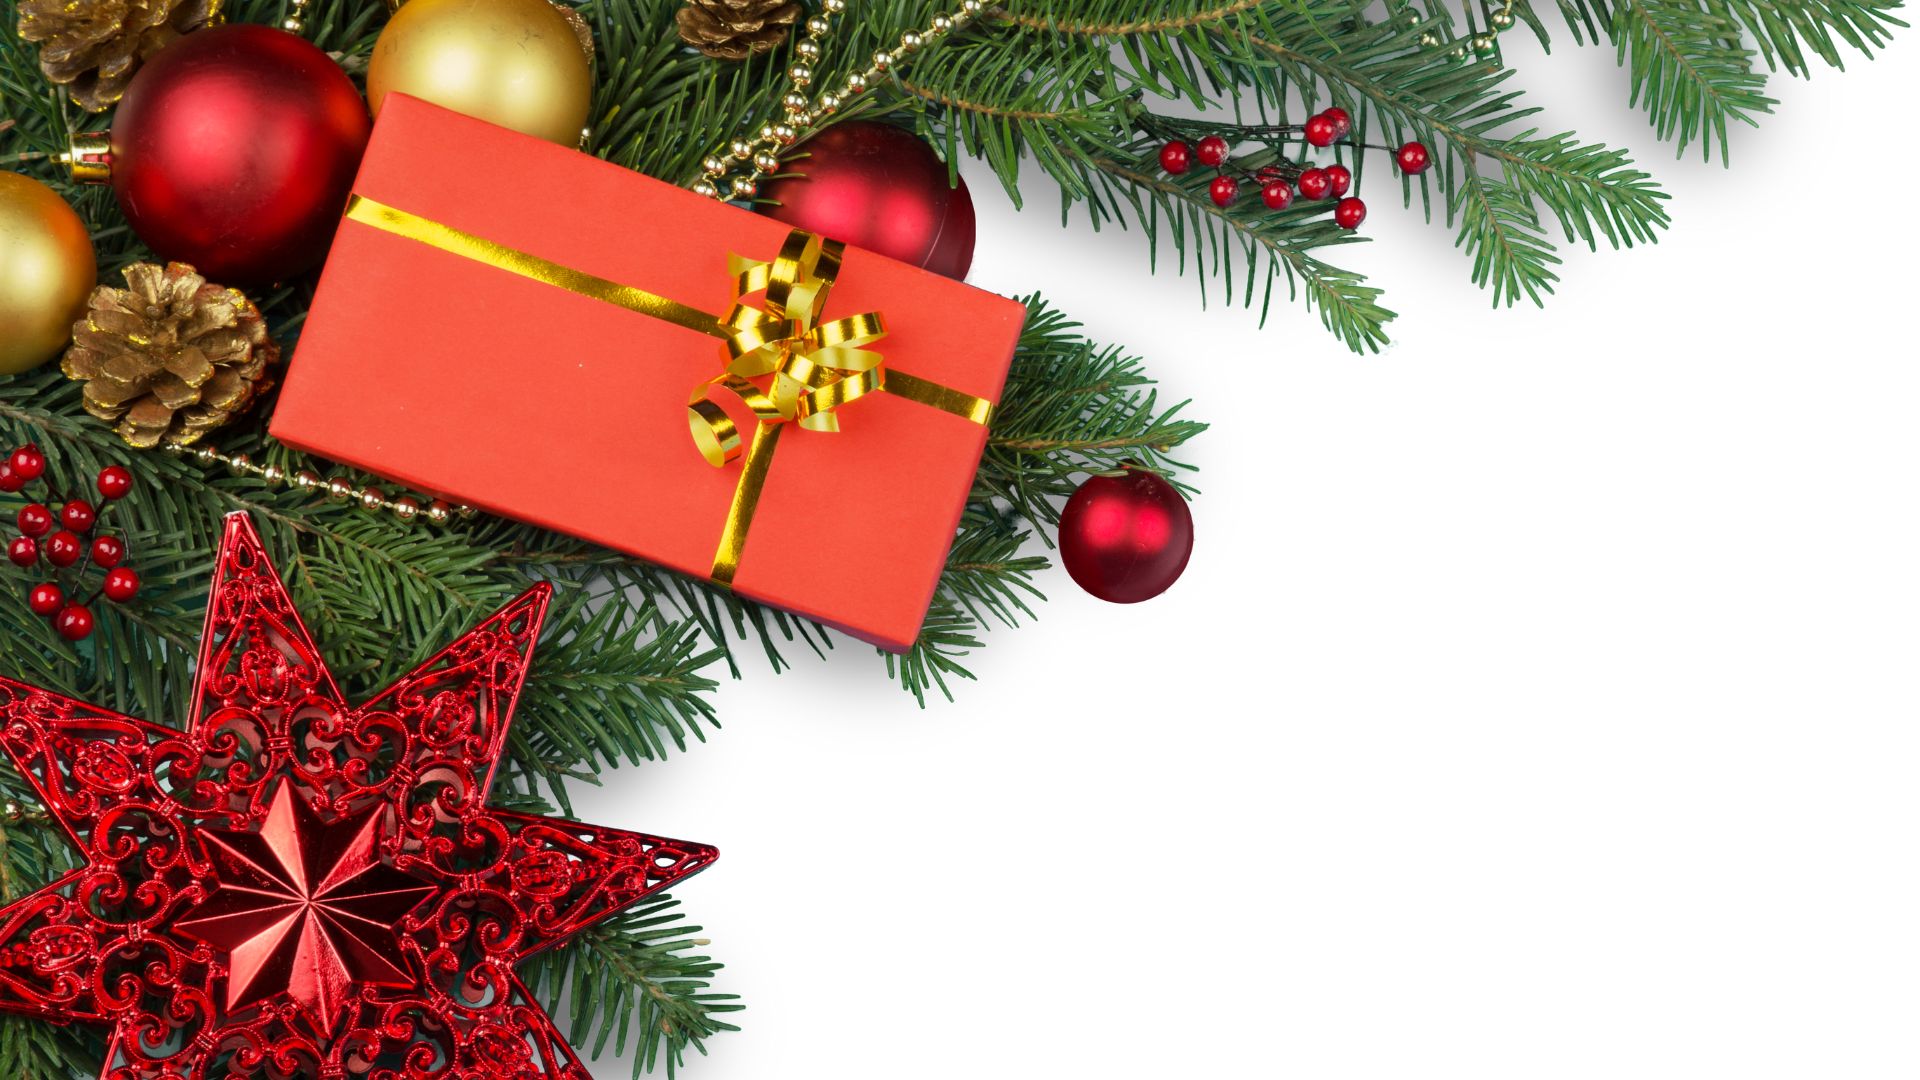 Imagem de fundo branco. Ao lado esquerdo da tela, uma decoração natalina composta por galhos verdes, bolas vermelhas e douradas, estrela e uma caixa de presente envolta em um papel vermelho com um laço dourado.